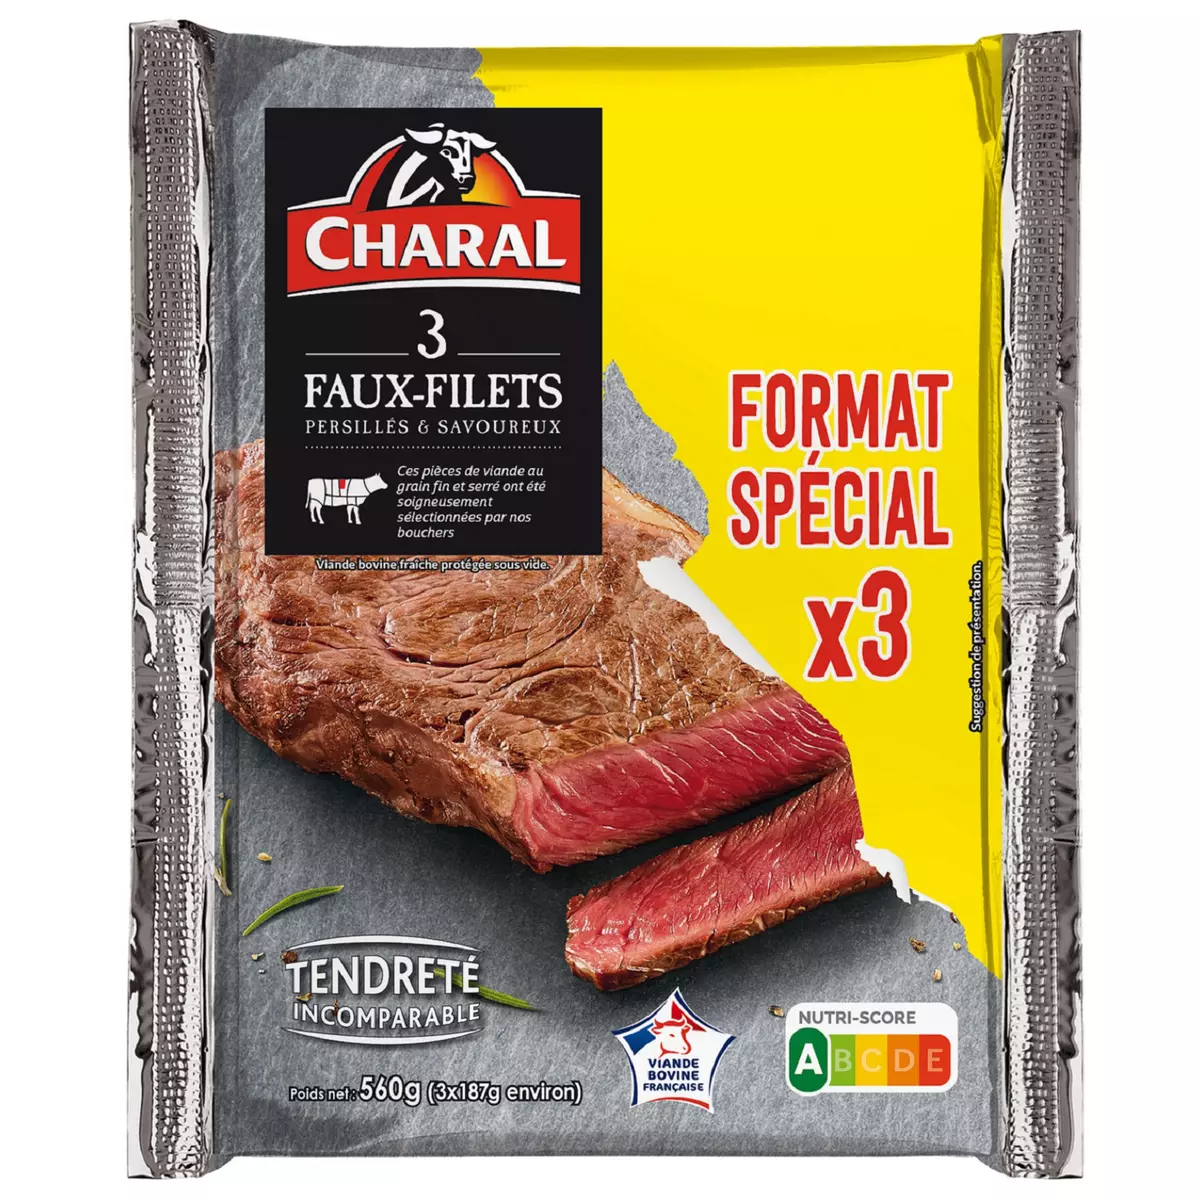 CHARAL Faux filets persillés & savoureux  3 pièces 560g